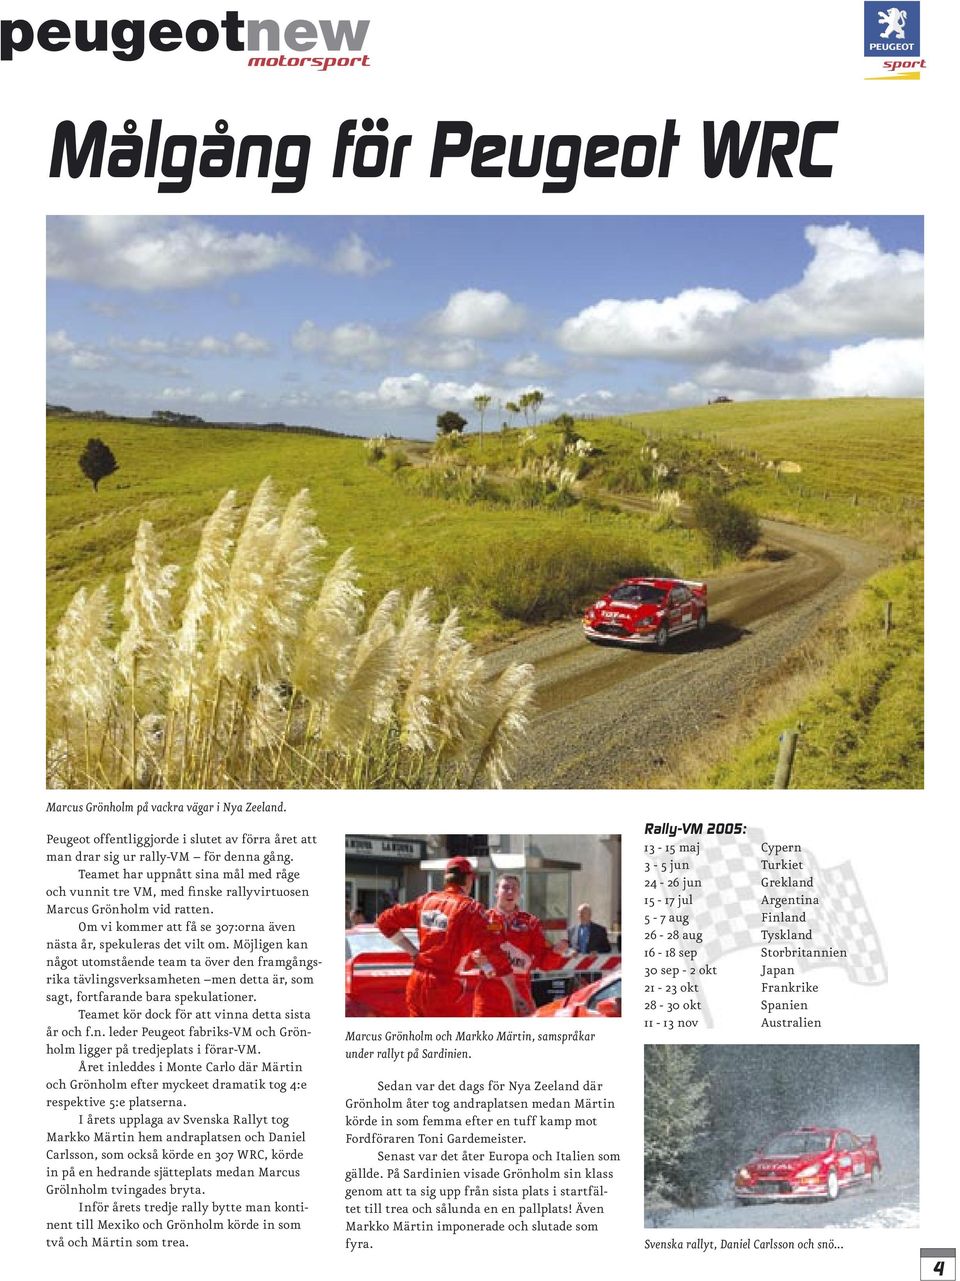 Möjligen kan något utomstående team ta över den framgångsrika tävlingsverksamheten men detta är, som sagt, fortfarande bara spekulationer. Teamet kör dock för att vinna detta sista år och f.n. leder Peugeot fabriks-vm och Grönholm ligger på tredjeplats i förar-vm.